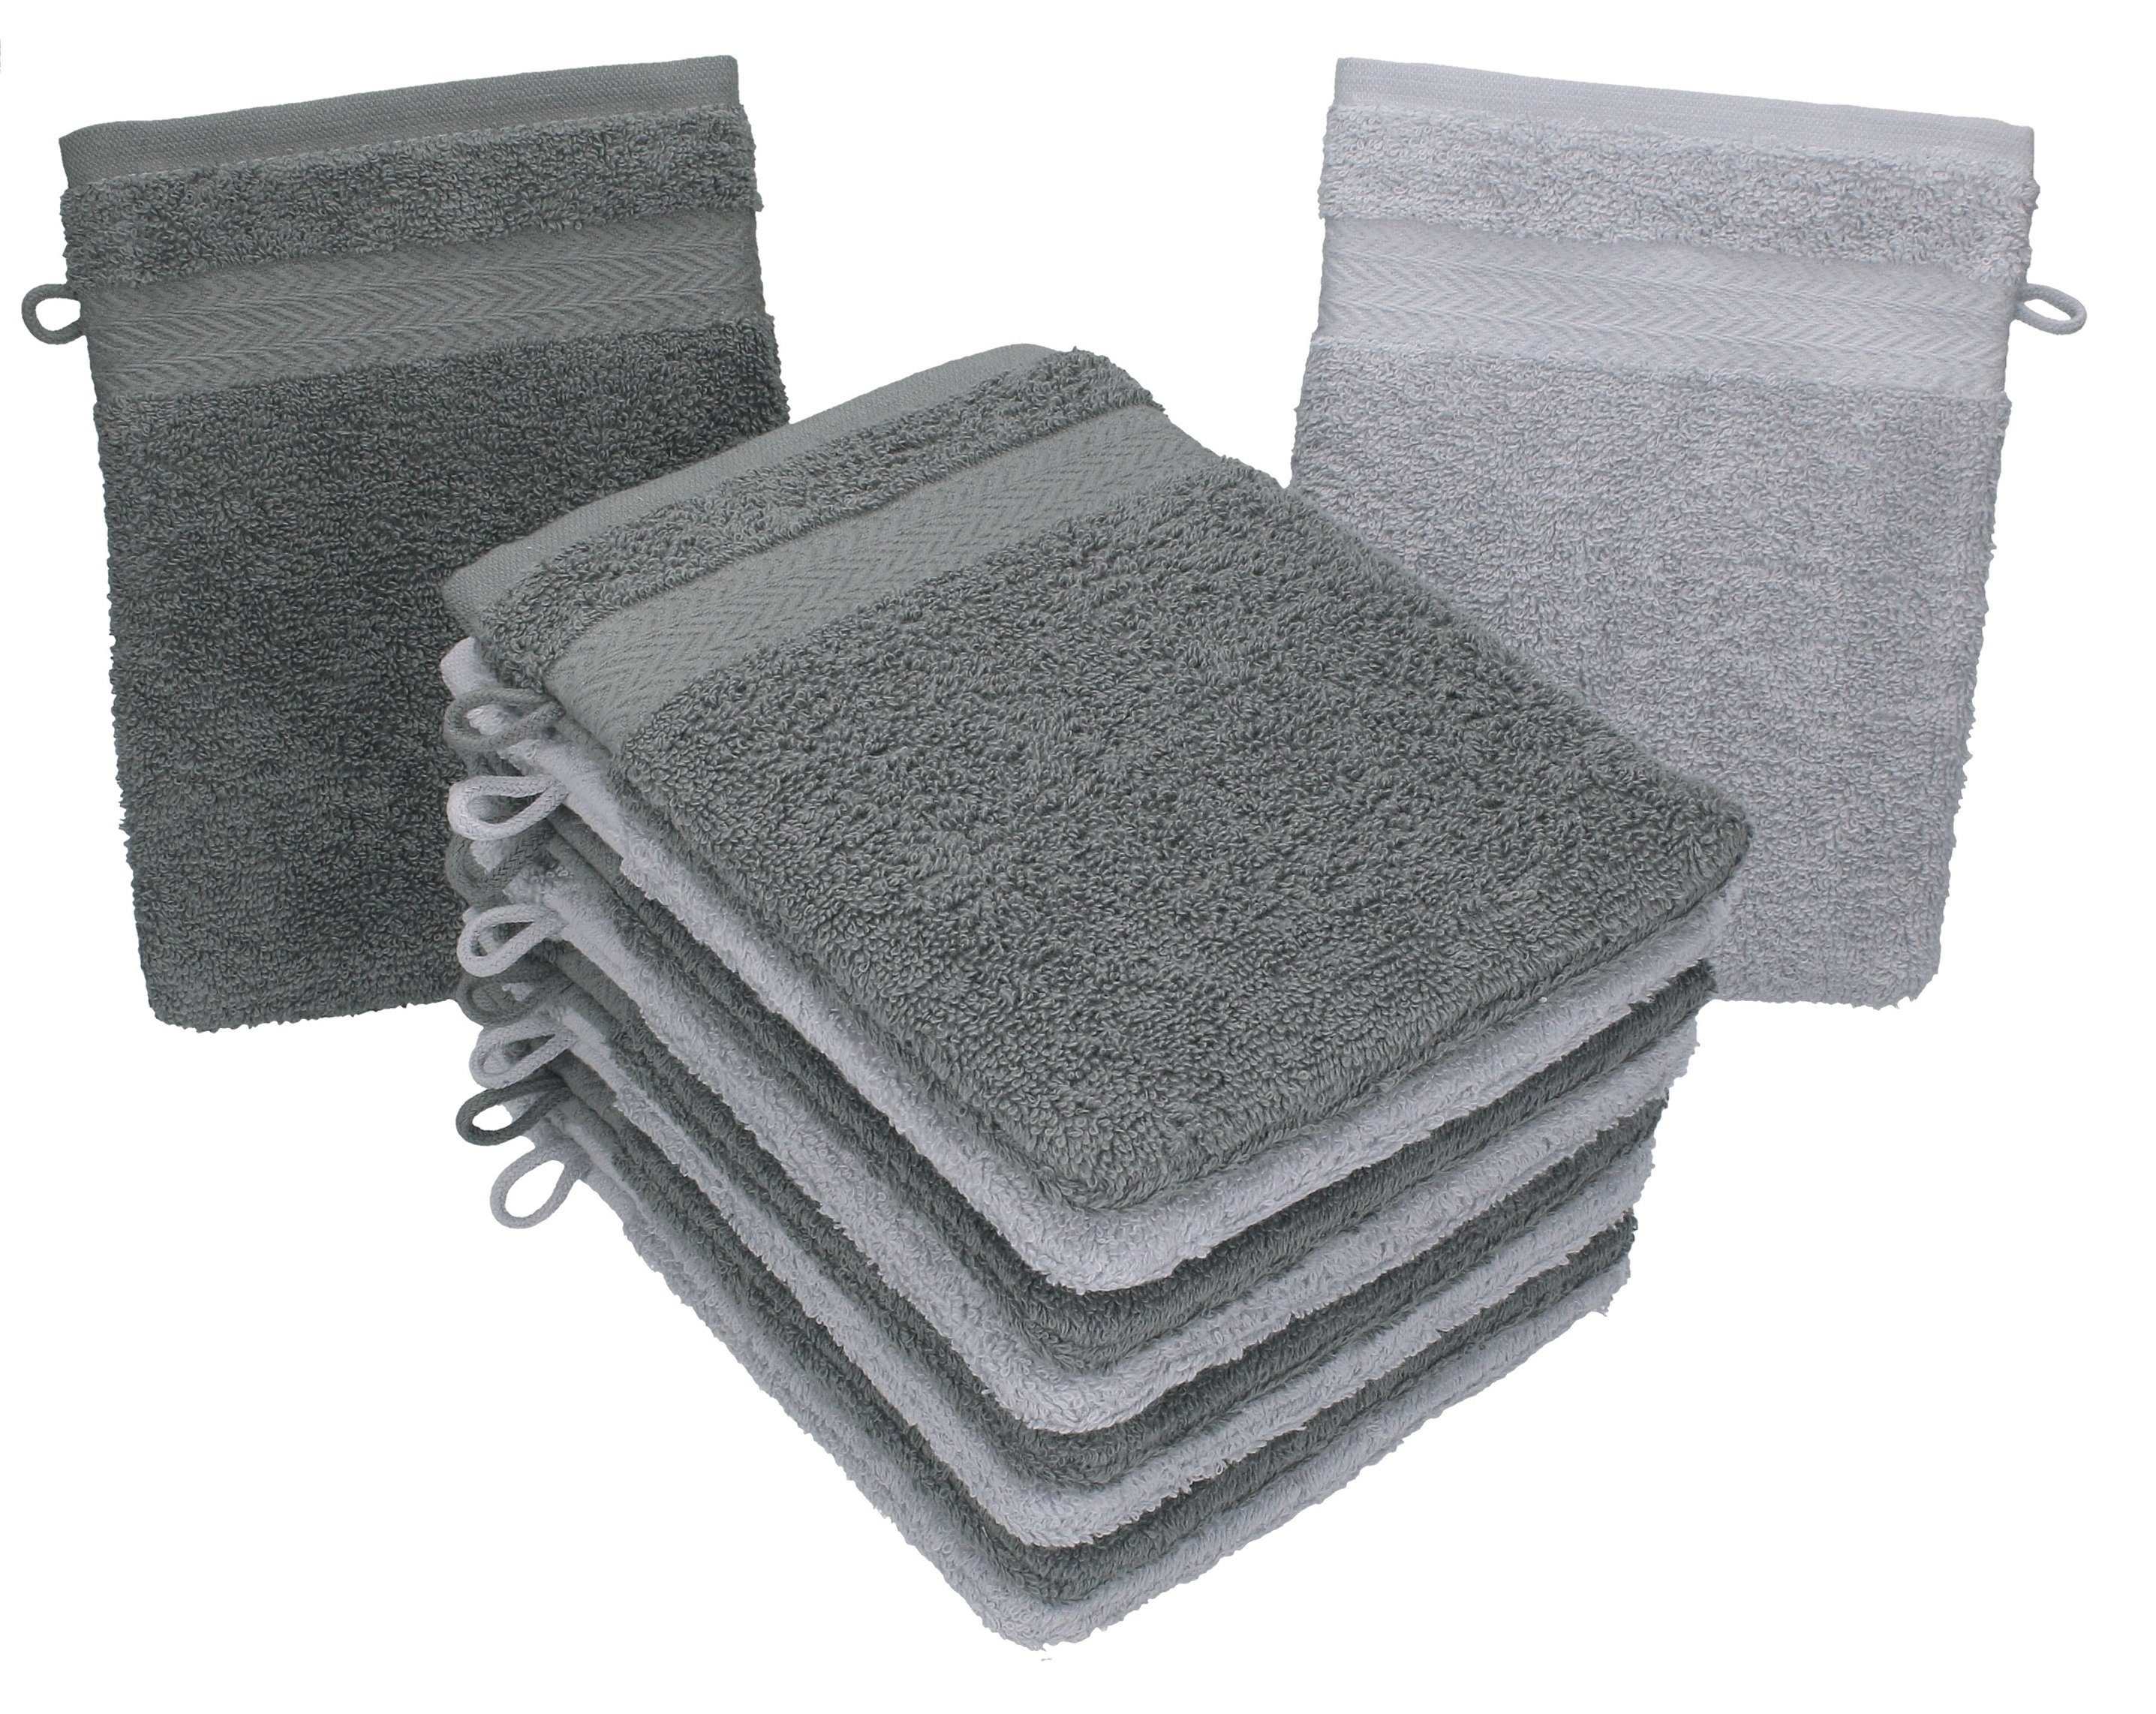 Betz Waschhandschuh 10 Stück Waschhandschuhe Premium 100% Baumwolle Waschlappen Set 16x21 cm Farbe anthrazit und silbergrau (10-tlg)